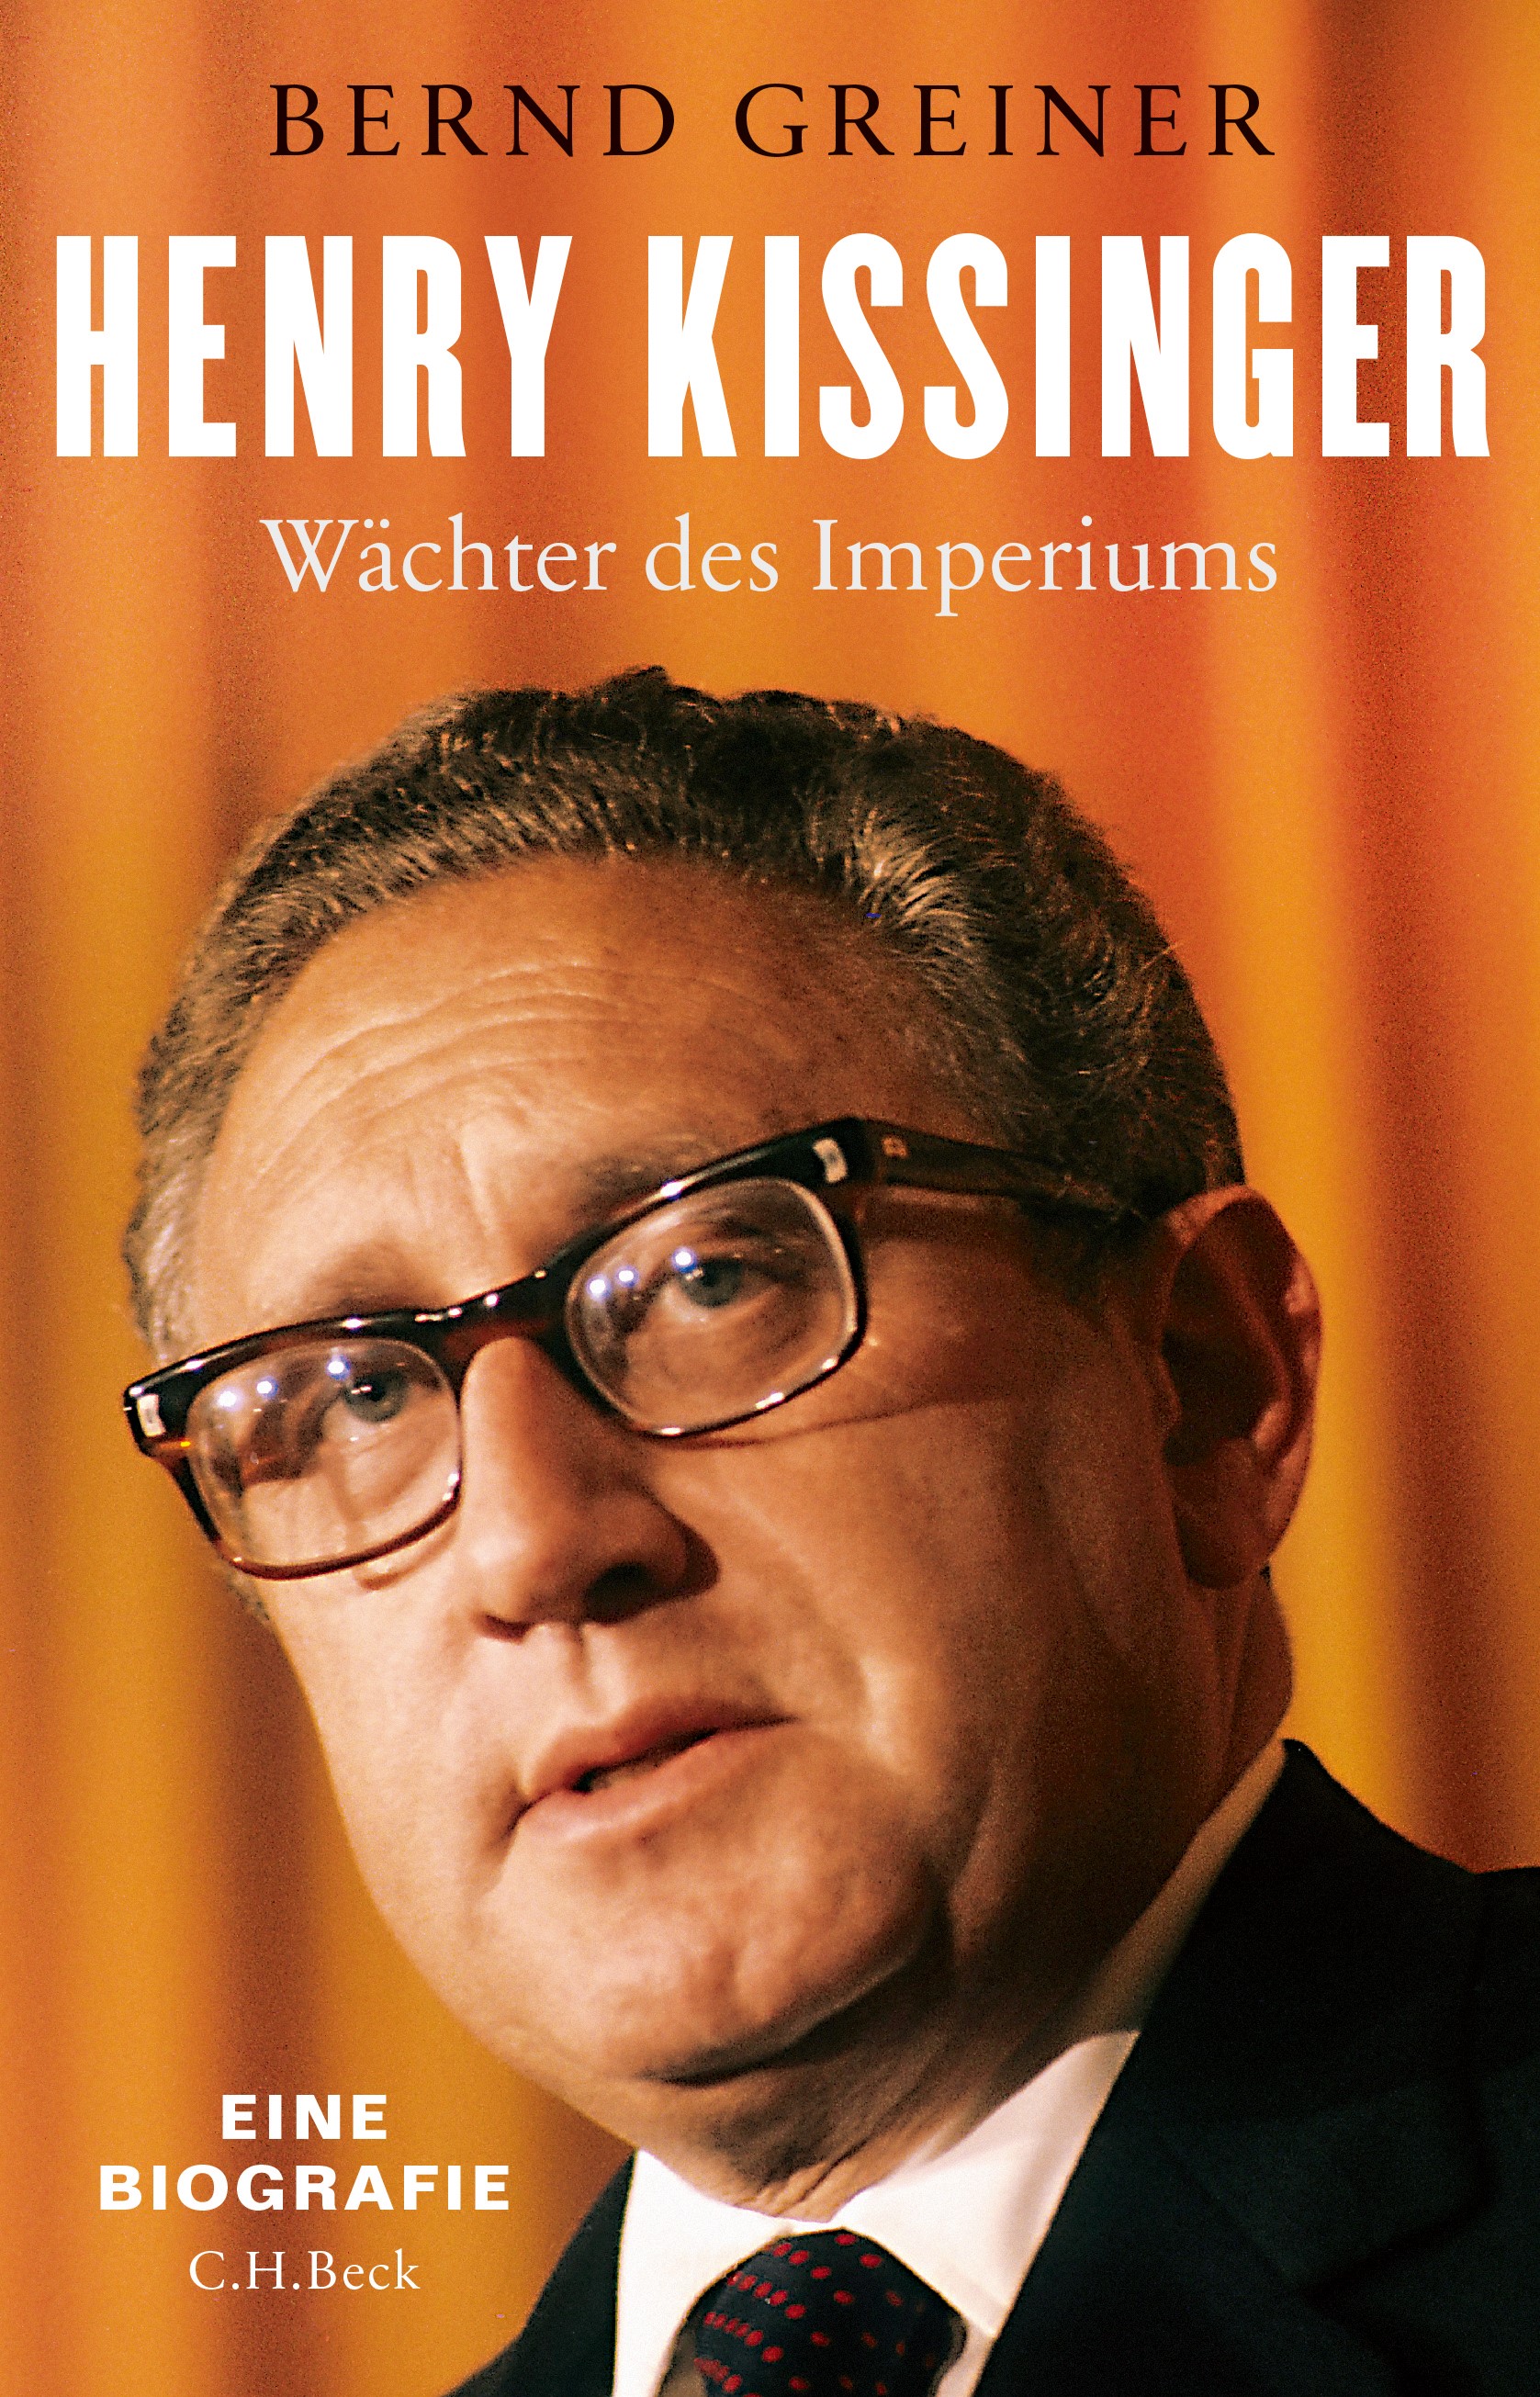 Cover: Greiner, Bernd, Henry Kissinger